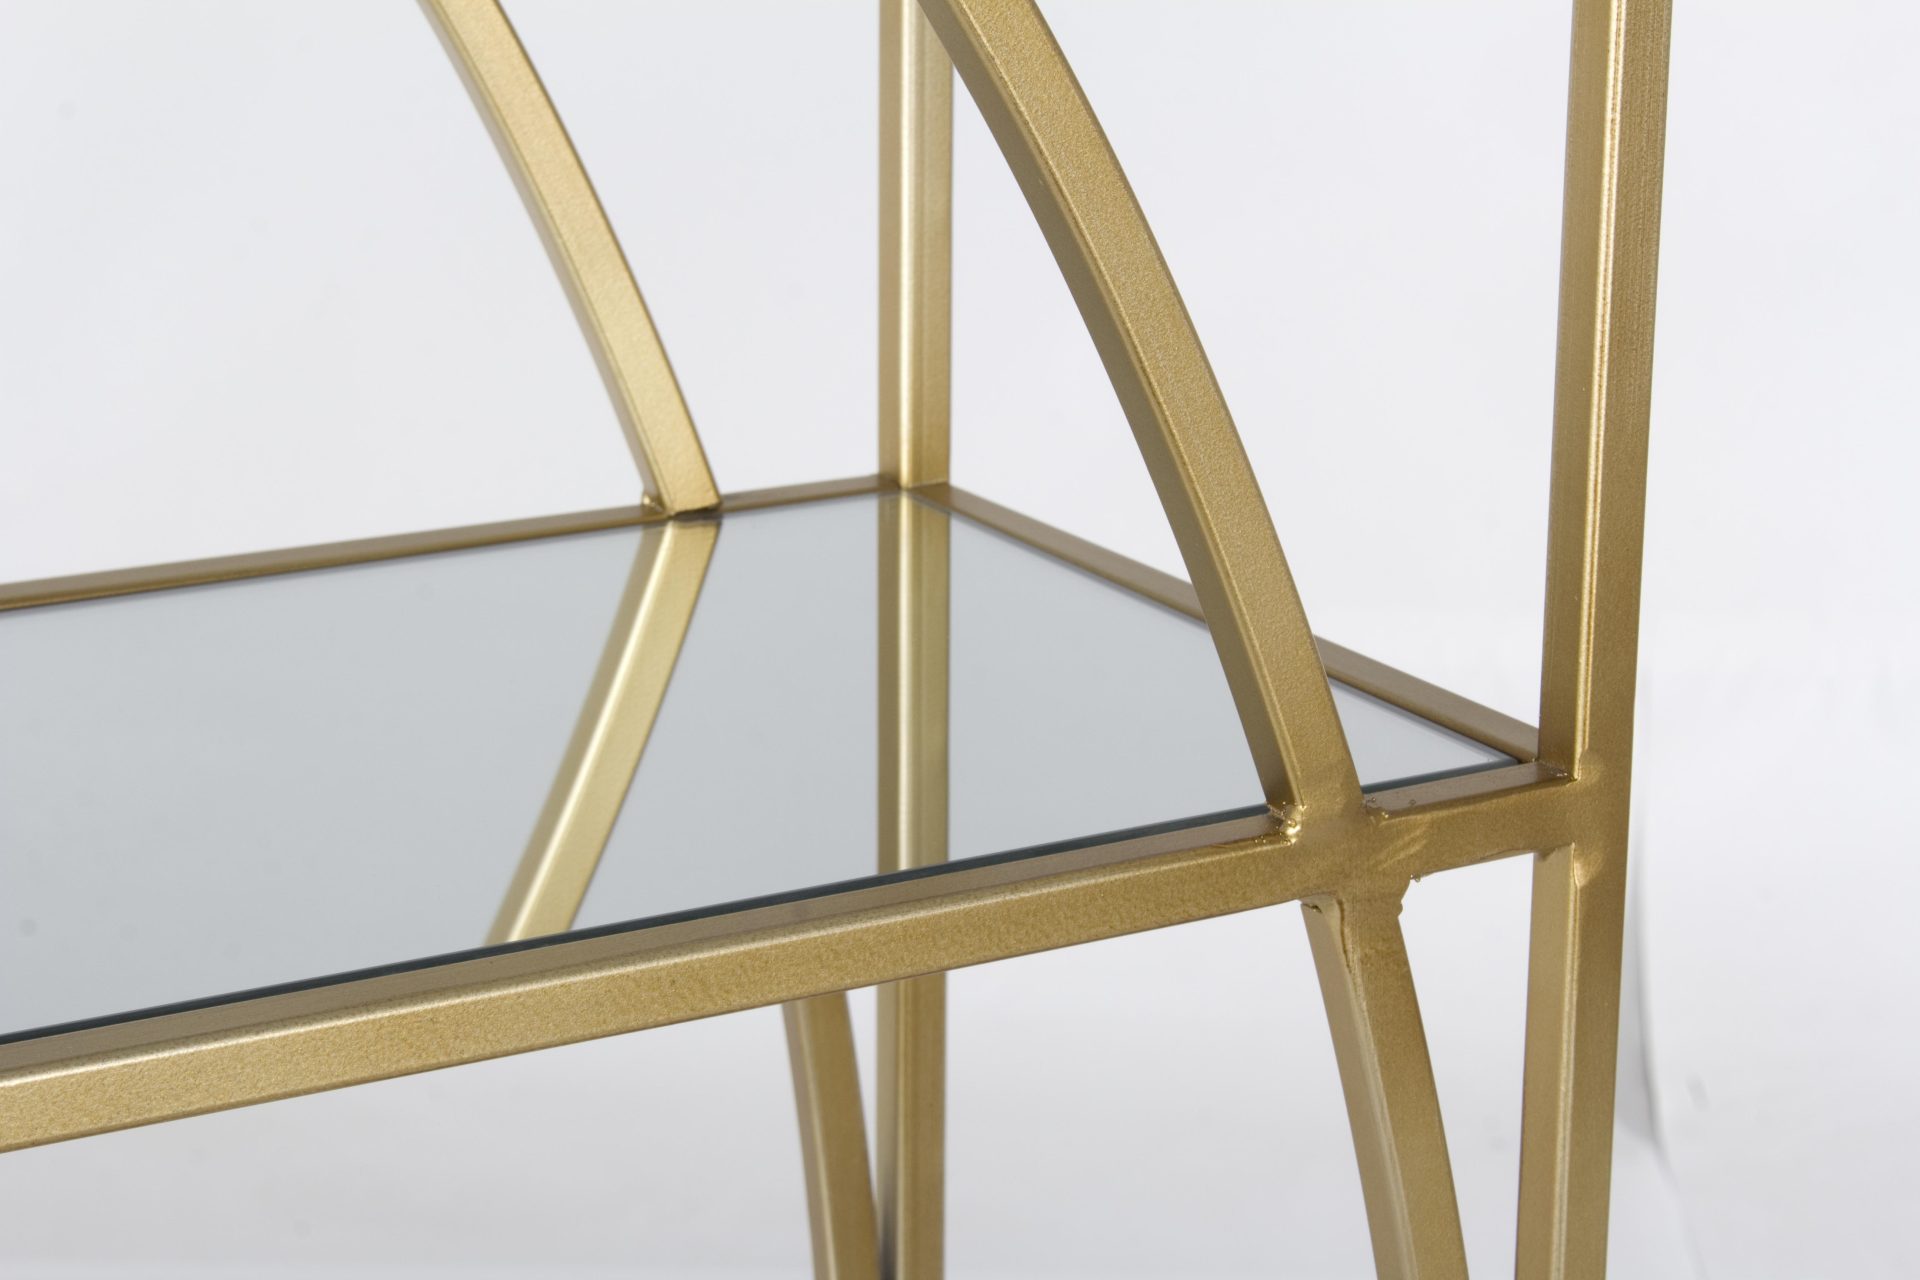 Das Regal Elenor überzeugt mit seinem klassischen Design. Gefertigt wurde es aus Glas. Das Gestell ist aus Metall und hat eine goldene Farbe. Das Regal verfügt über drei Fächer. Die Breite beträgt 56 cm.